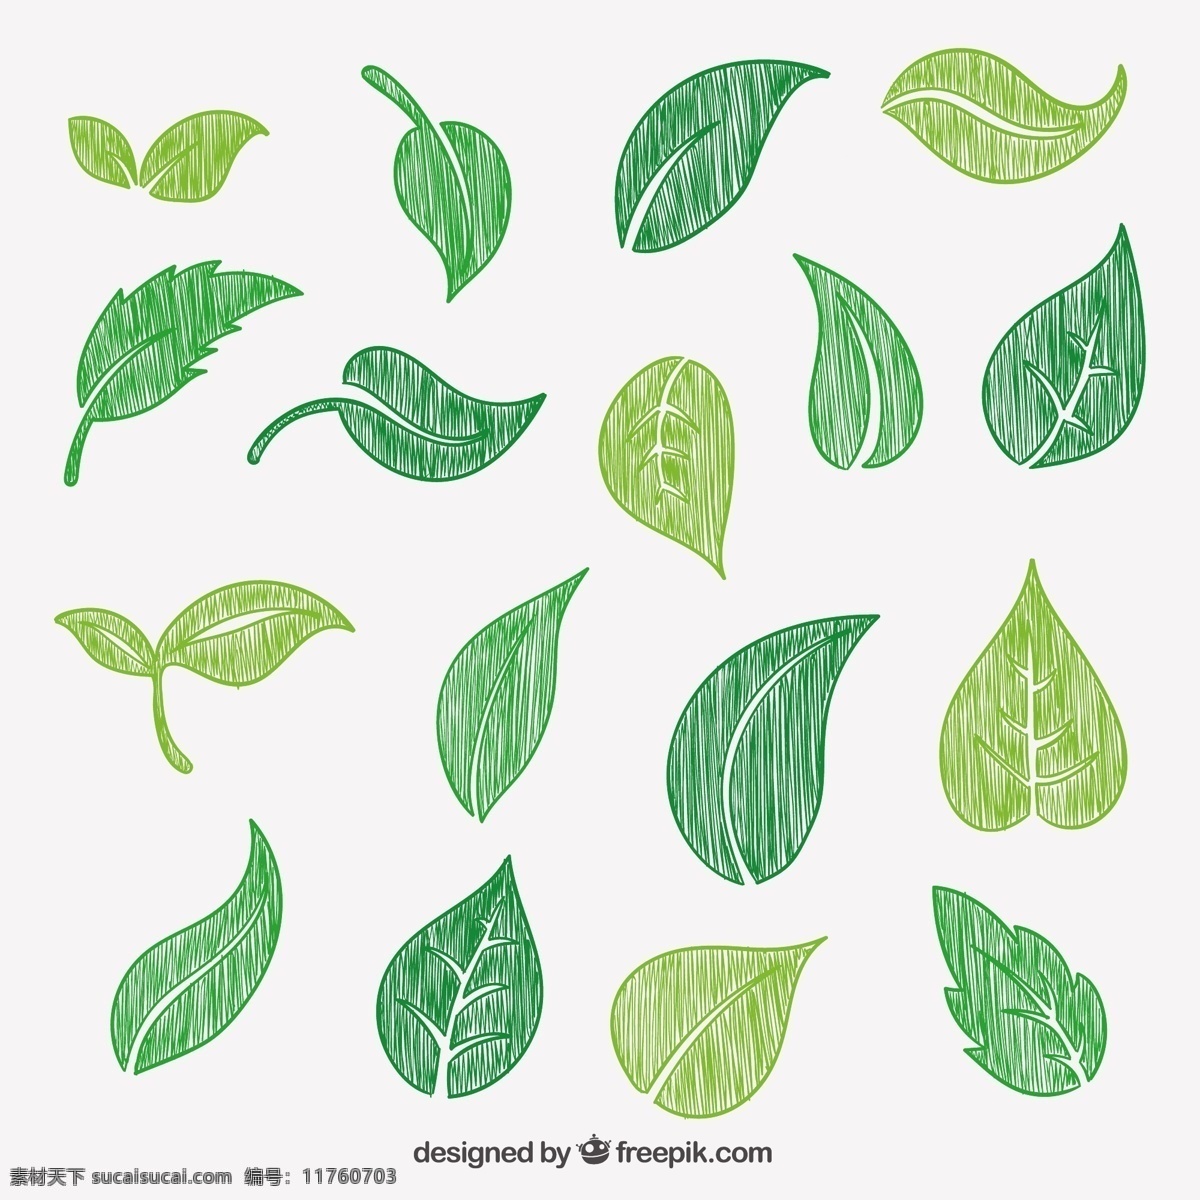 手绘绿叶 自然 绿色 叶子 植物 绘画 手工 抽纱 手绘 植被 图标 高清 源文件